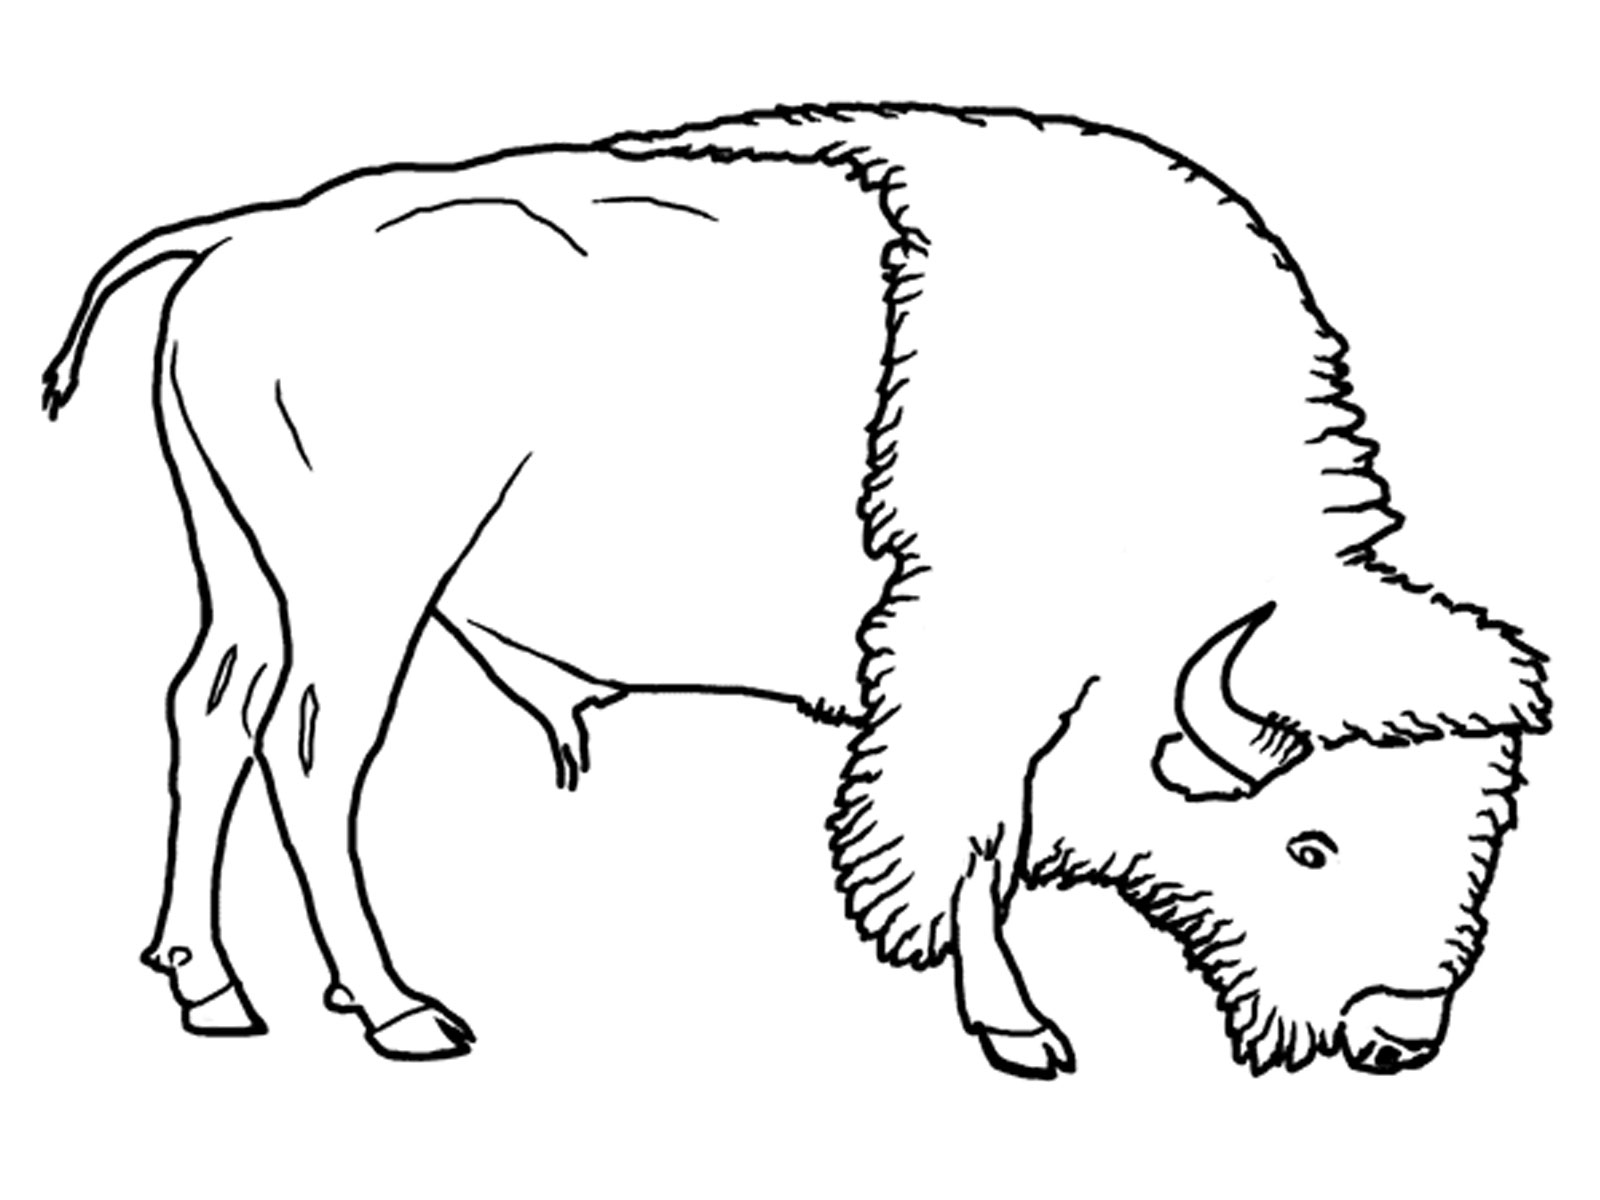 Malvorlage: Bison (Tiere) #1282 - Kostenlose Malvorlagen zum Ausdrucken